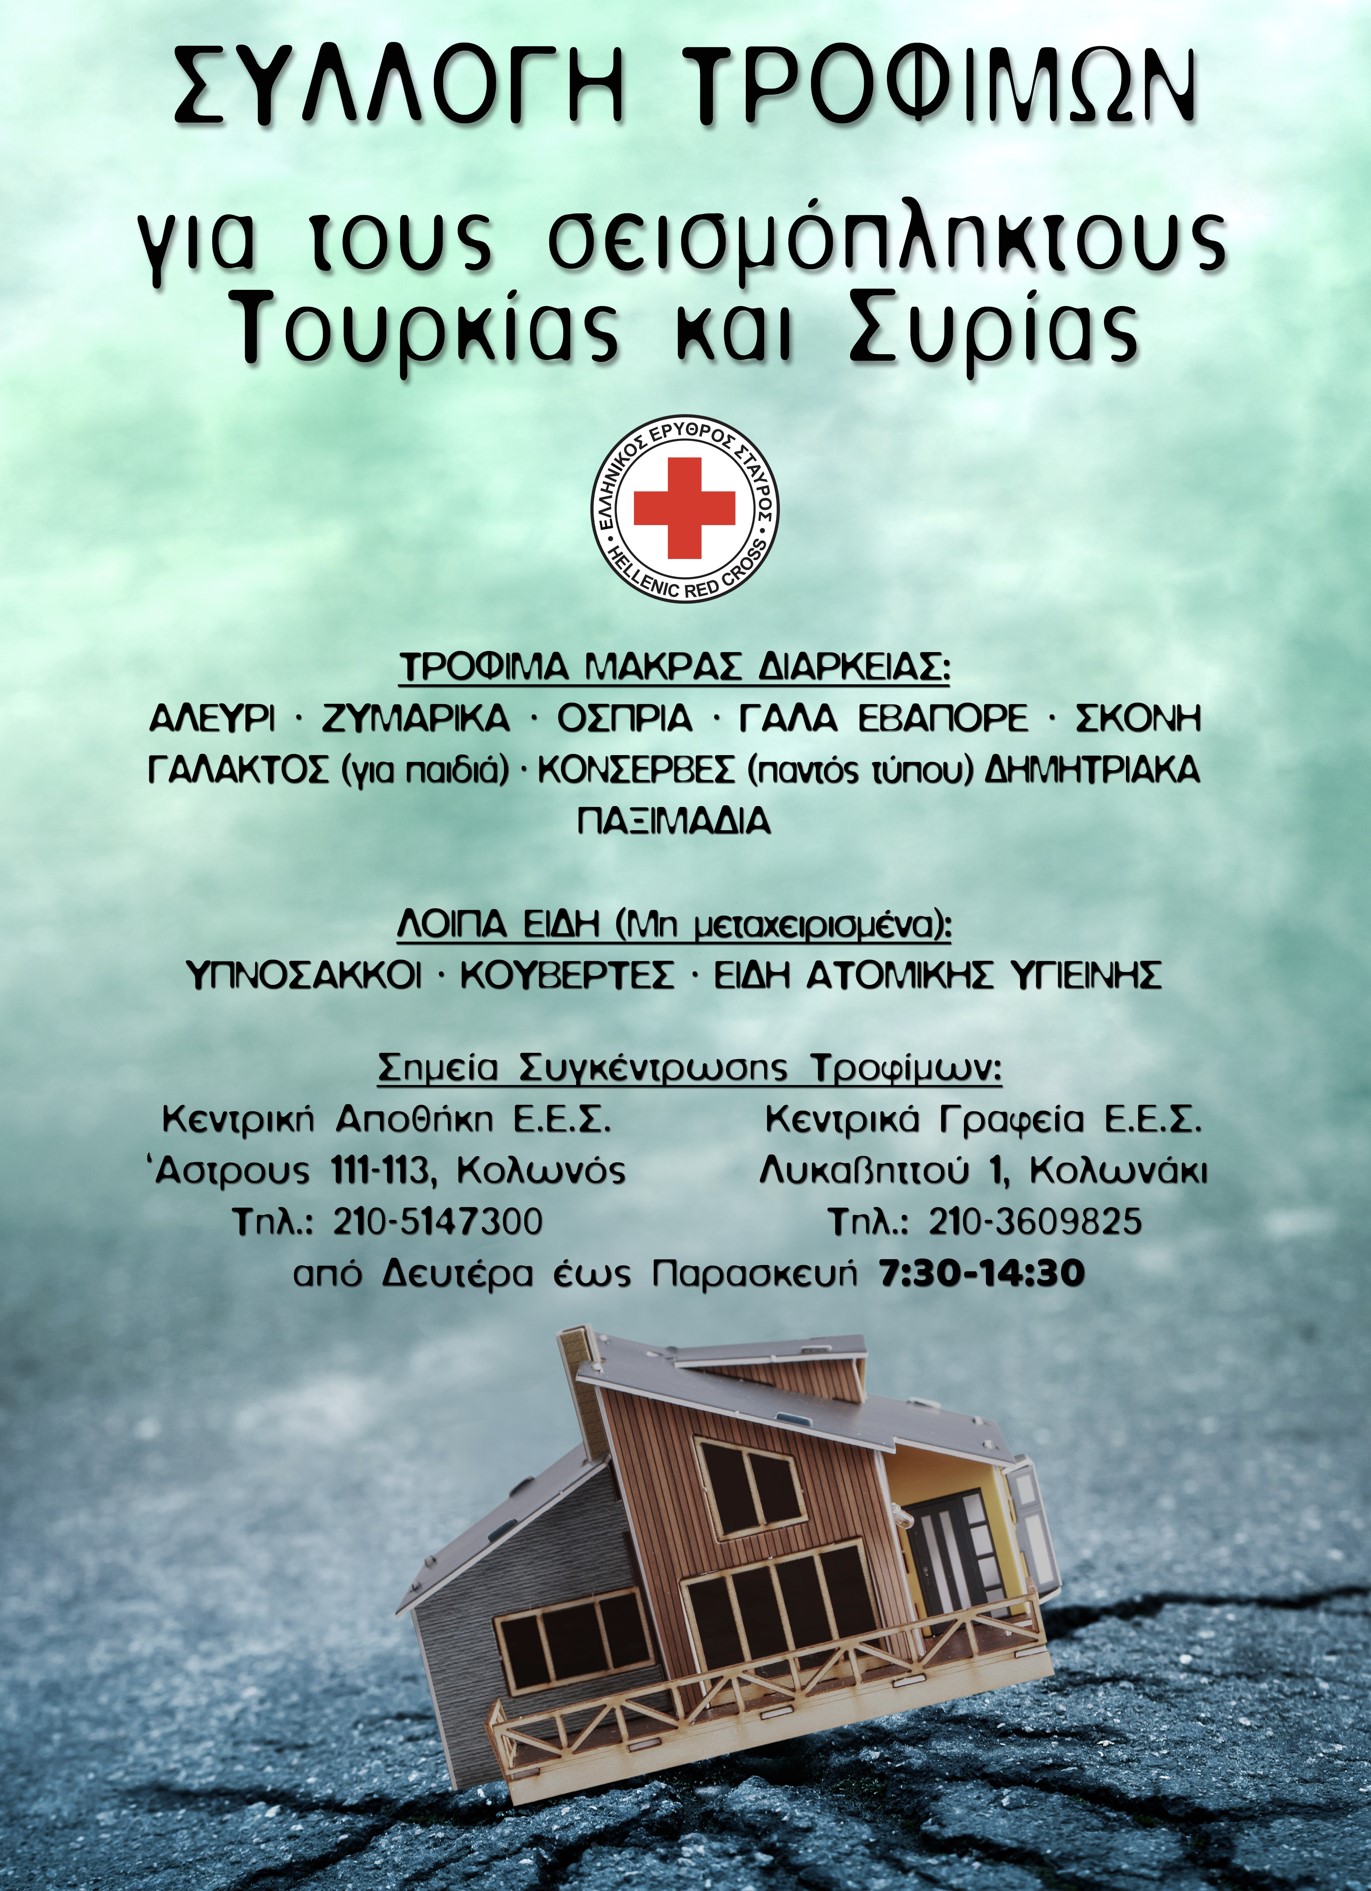 Ο Ελληνικός Ερυθρός Σταυρός απευθύνει κάλεσμα για συγκέντρωση ανθρωπιστικής βοήθειας προς τους πληγέντες Τουρκίας και Συρίας